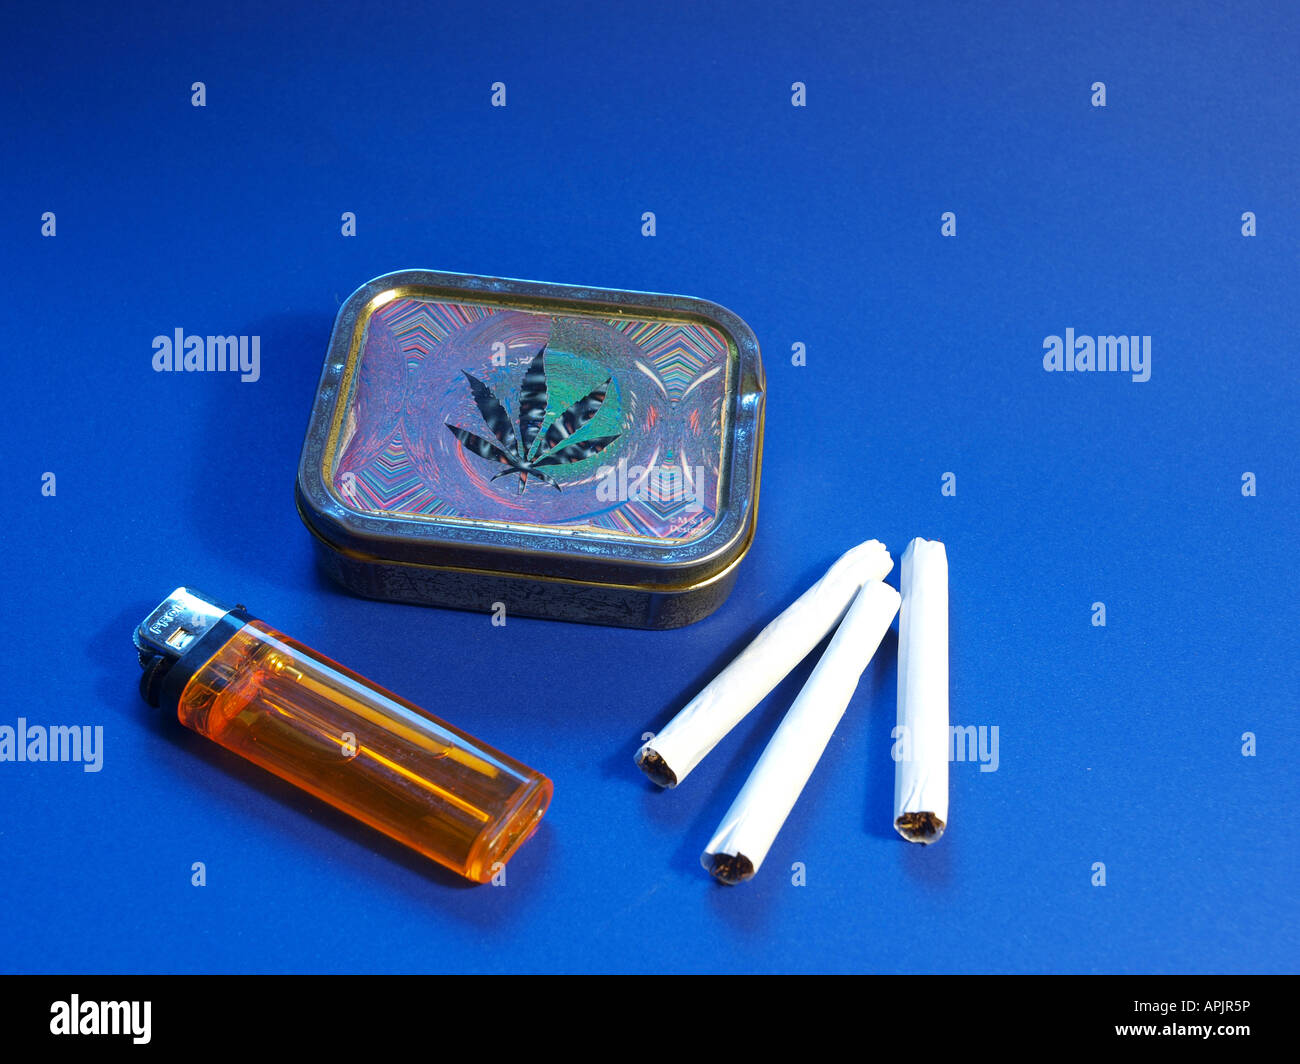 Sigarette, sigari e sigarette con scatola di foglie di cannabis Foto Stock